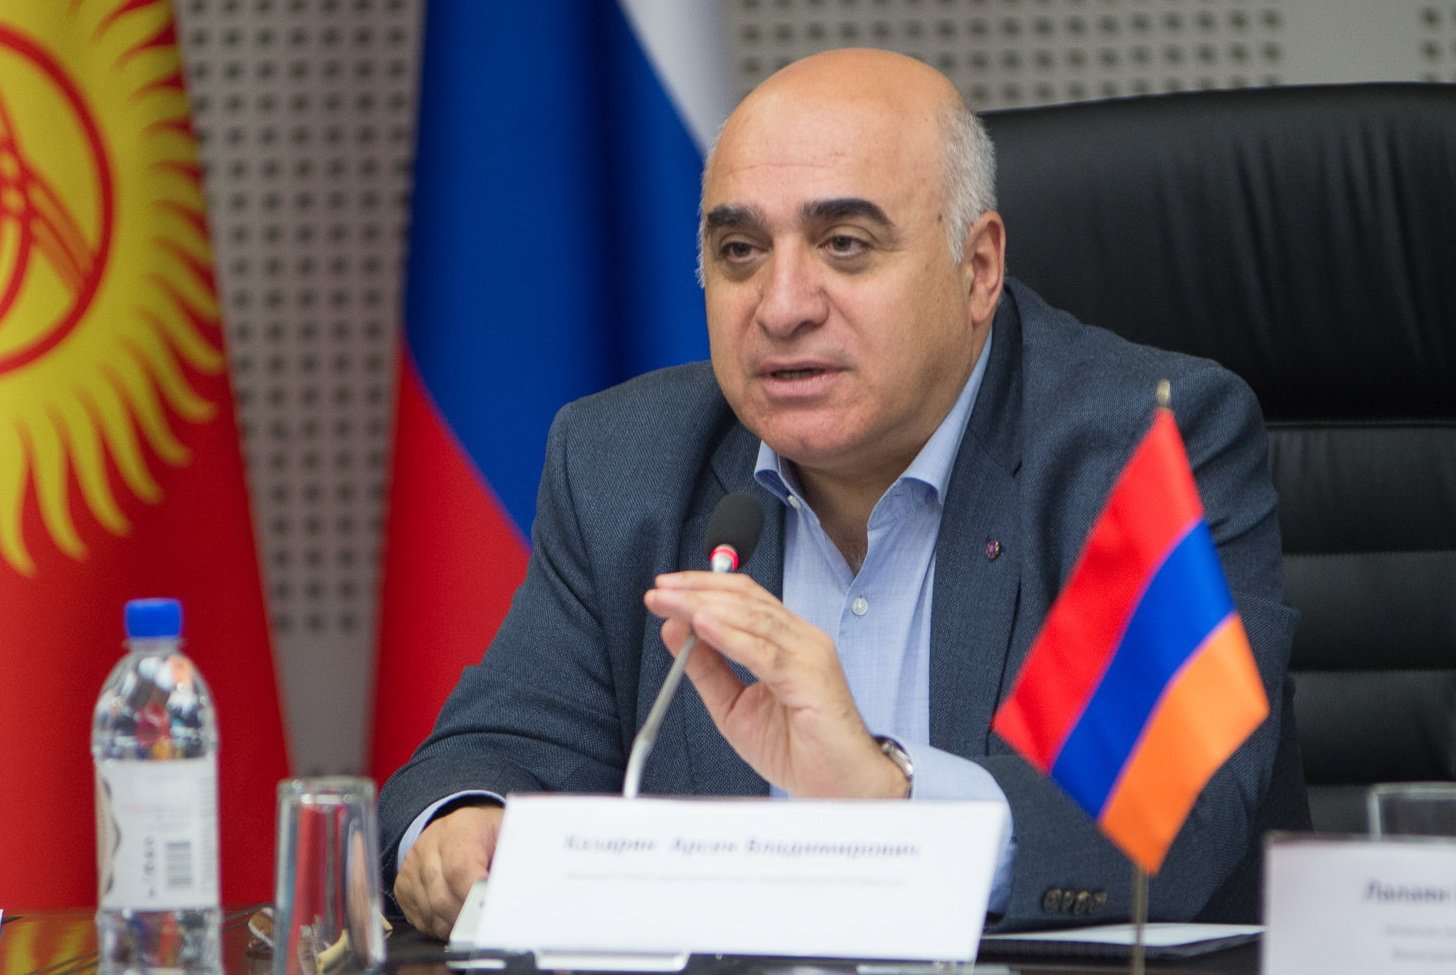 ԵԱՏՄ Գործարար խորհրդի նախագահությունը հաստատել է Միության տարածքից Հայաստան ուղարկվող բեռների տարանցիկ մաքսային հայտարարագրման մասին ՀԱԳՄ առաջարկը